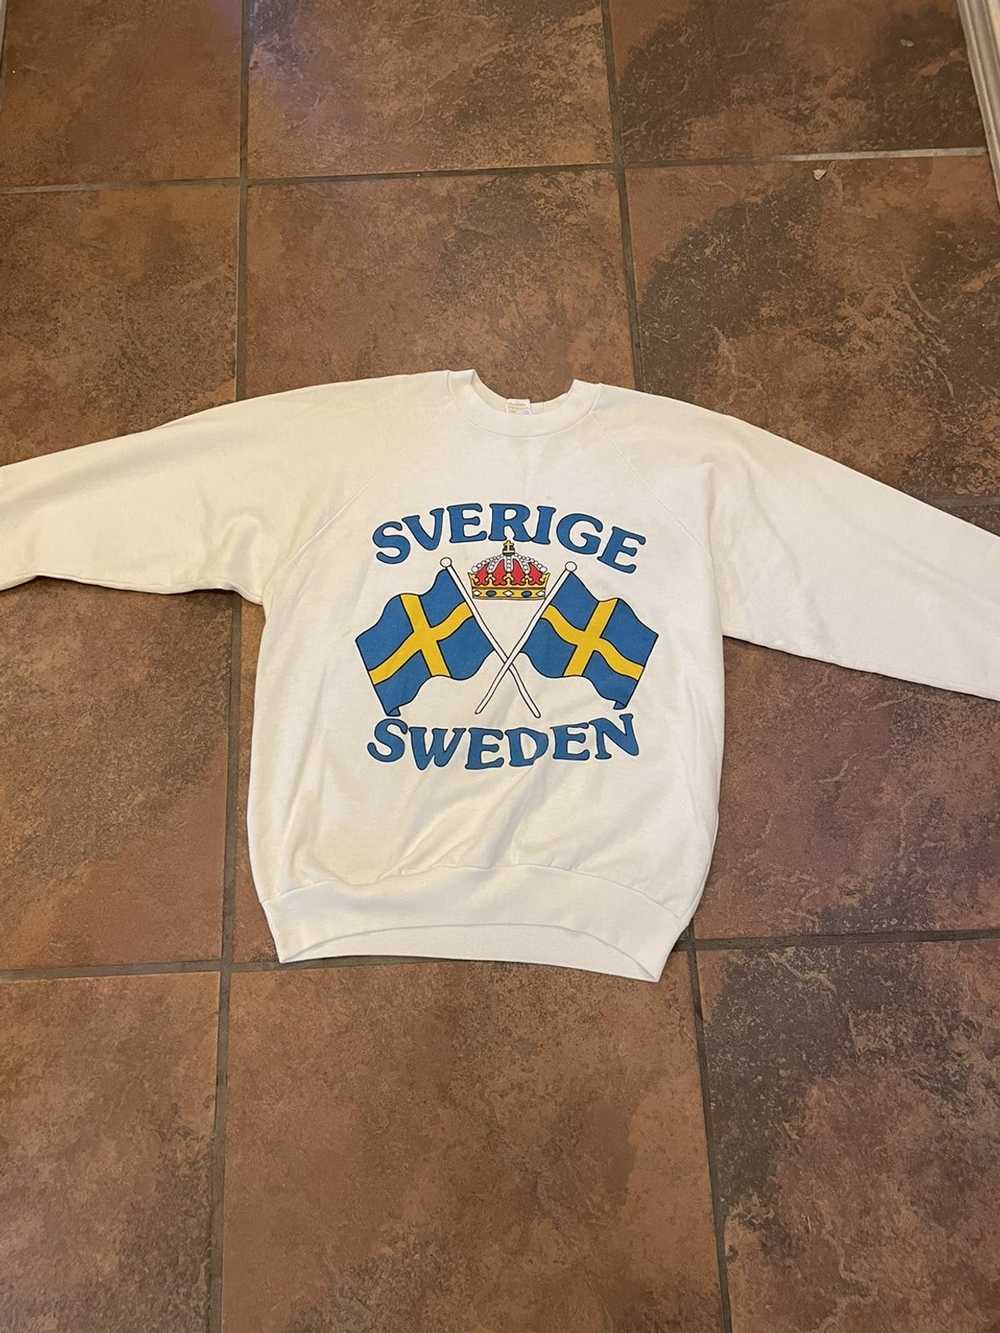 Vintage VINTAGE SWEDEN SWEATER - image 1